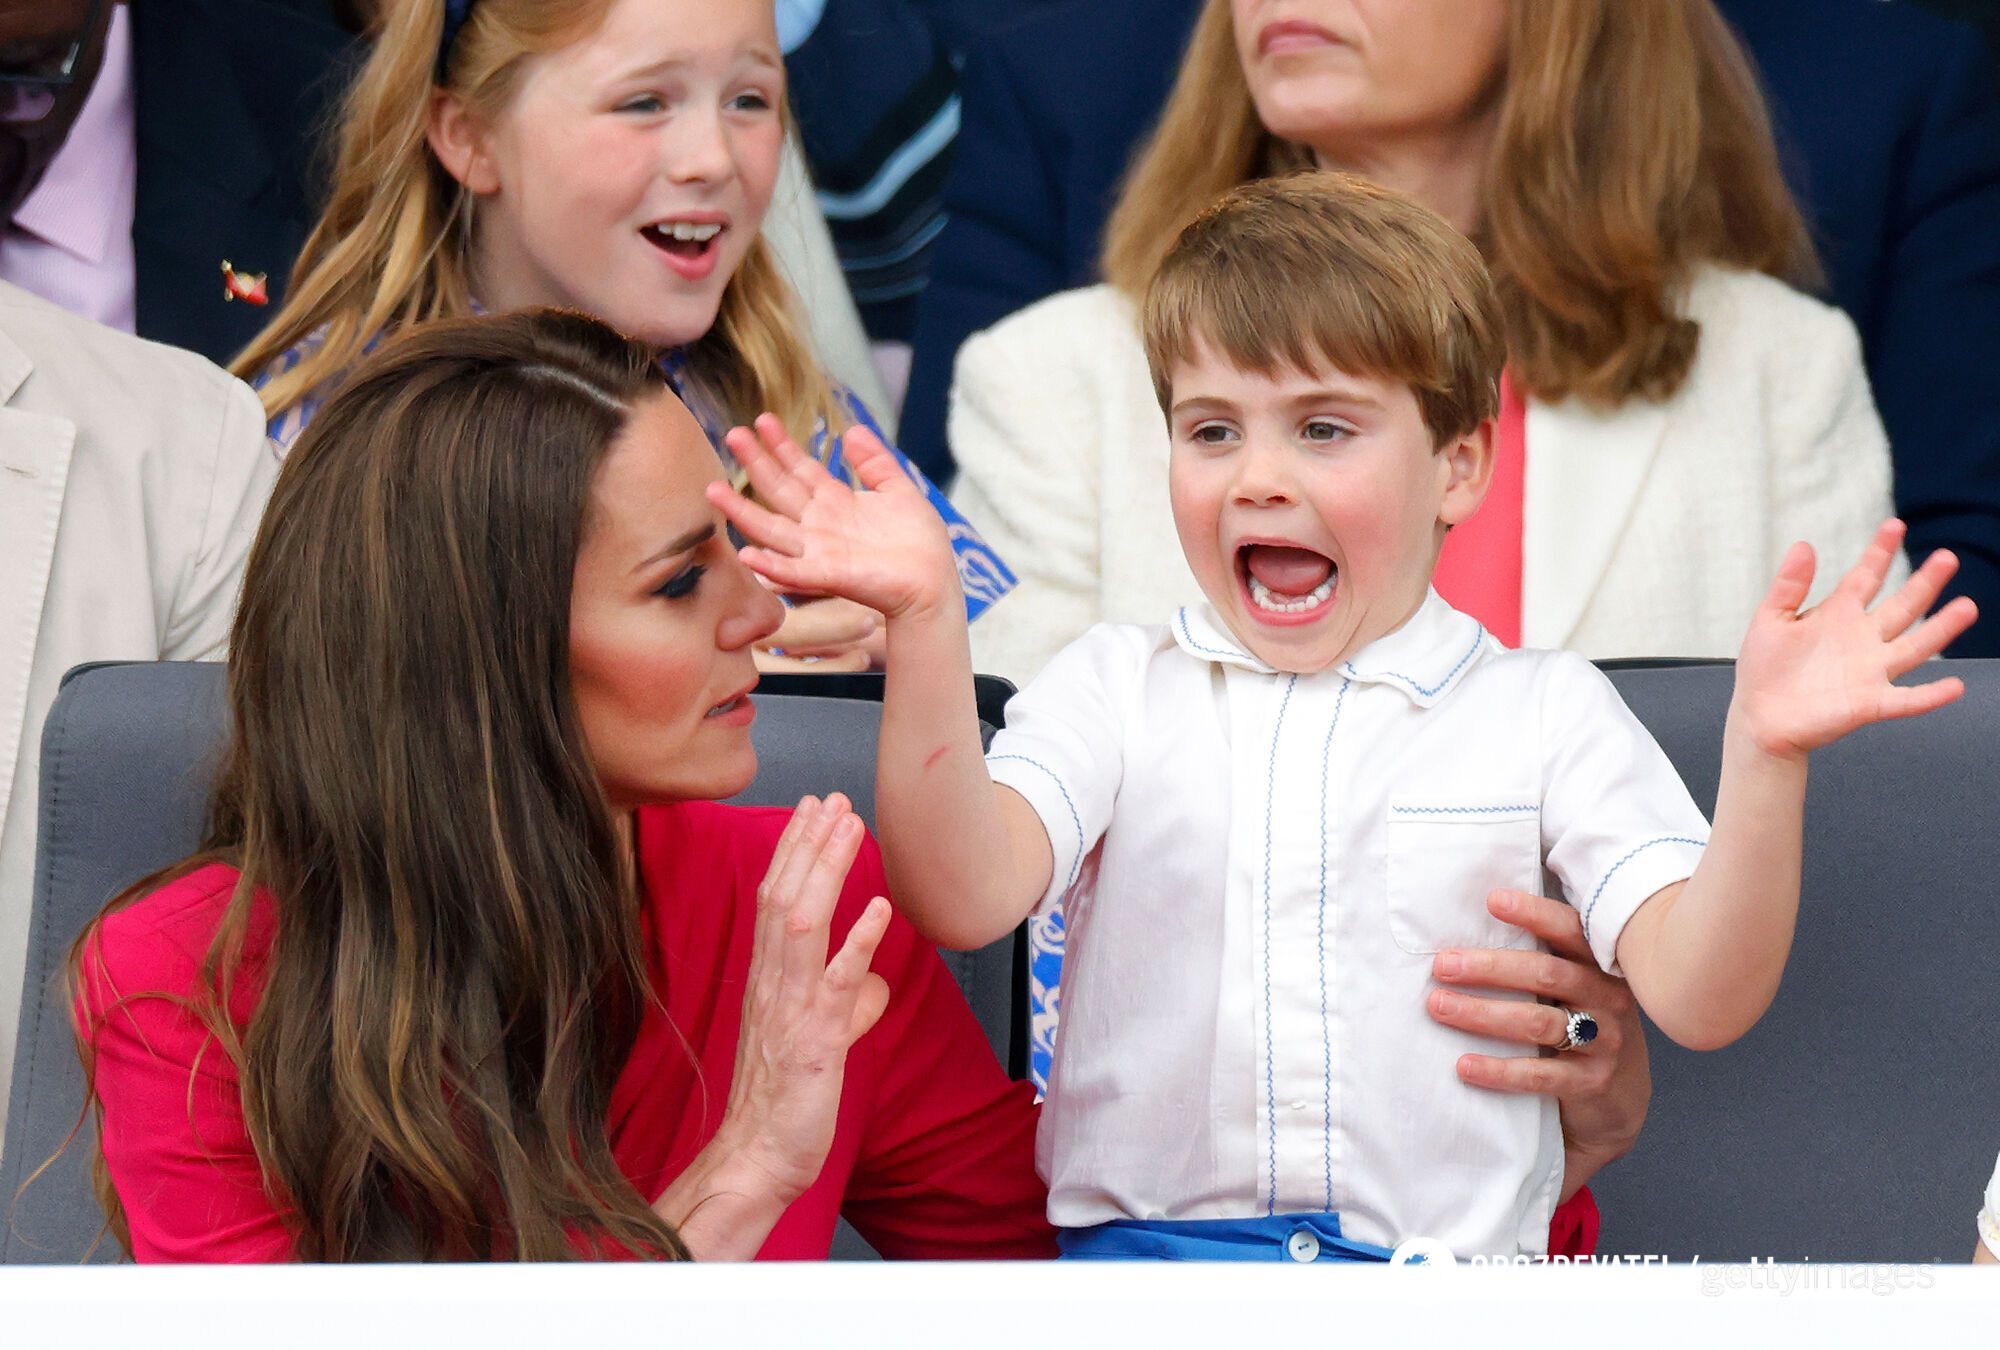 Królewski ekspert podał dwa powody, dla których Kate Middleton pokazała zdjęcie księcia Louisa później niż zwykle